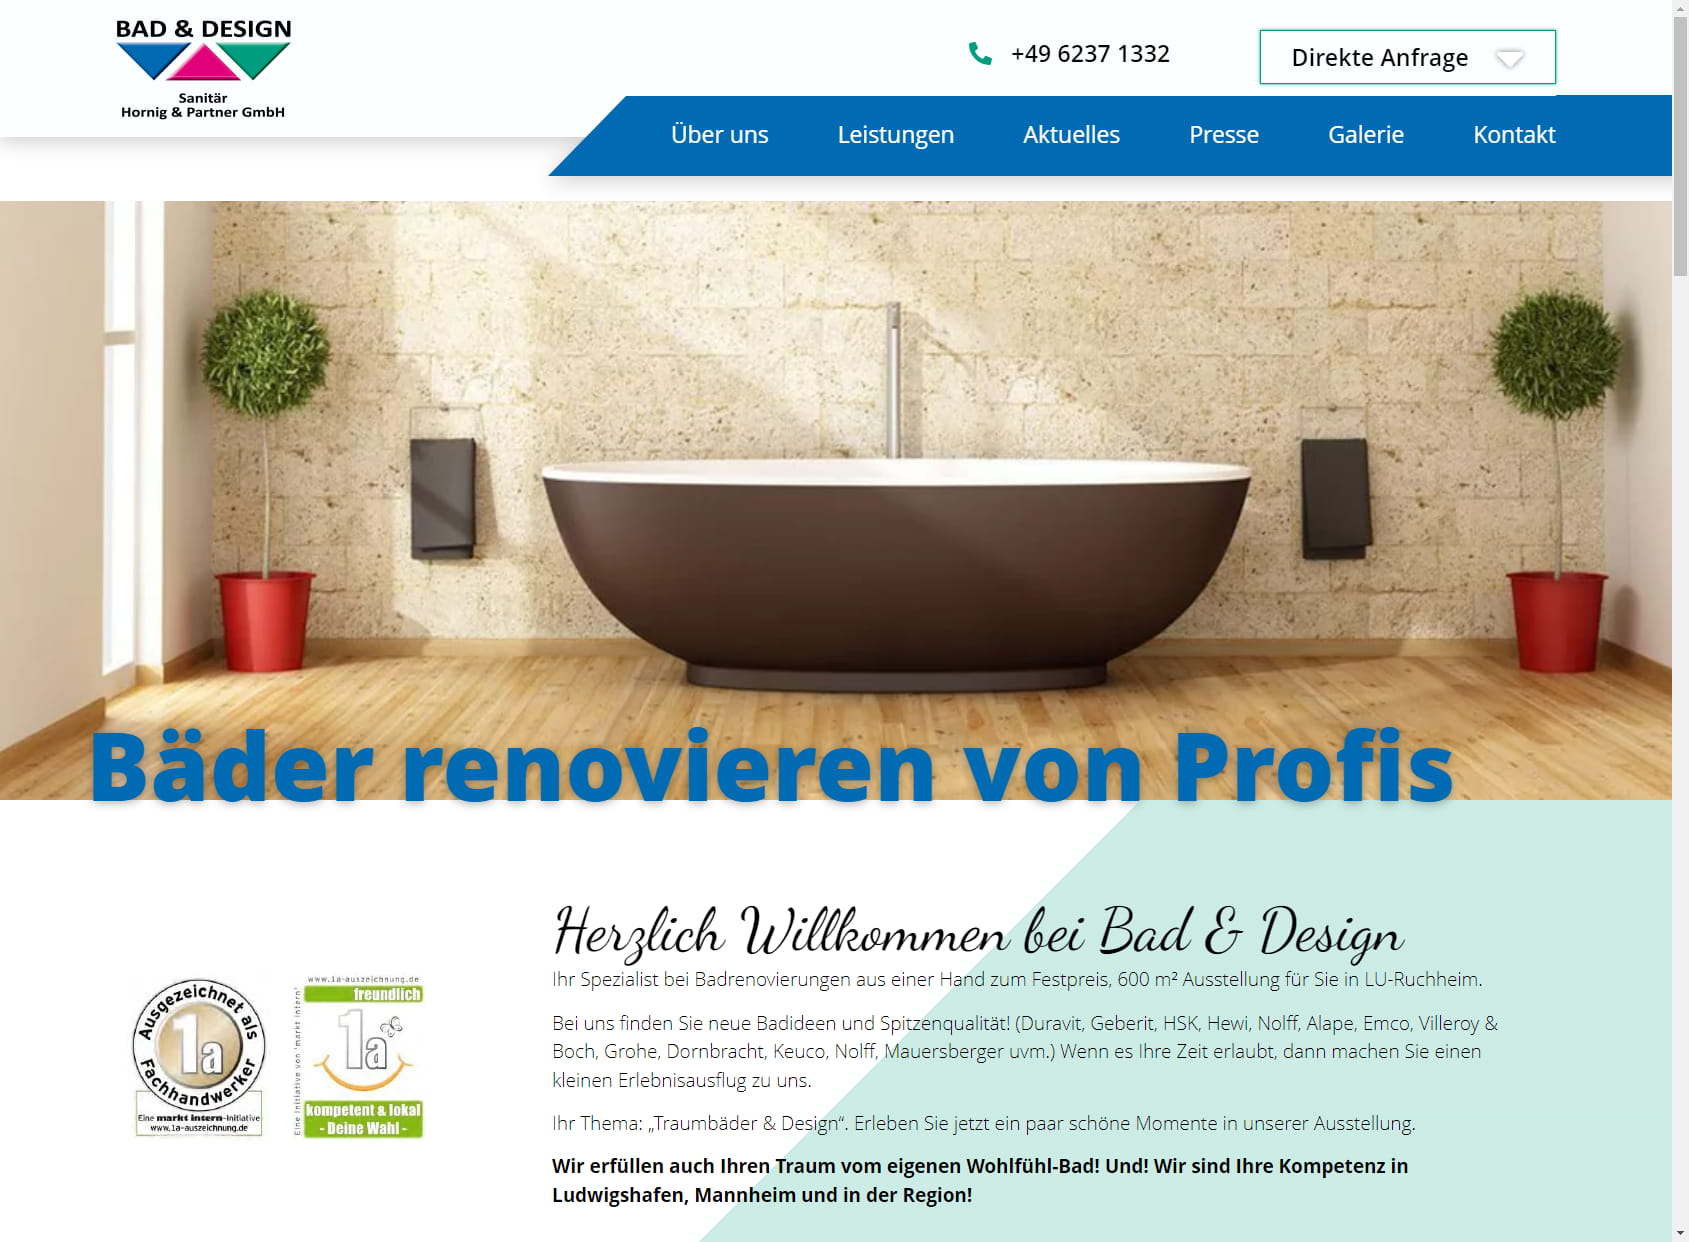 Bad & Design Sanitär Hornig & Partner GmbH